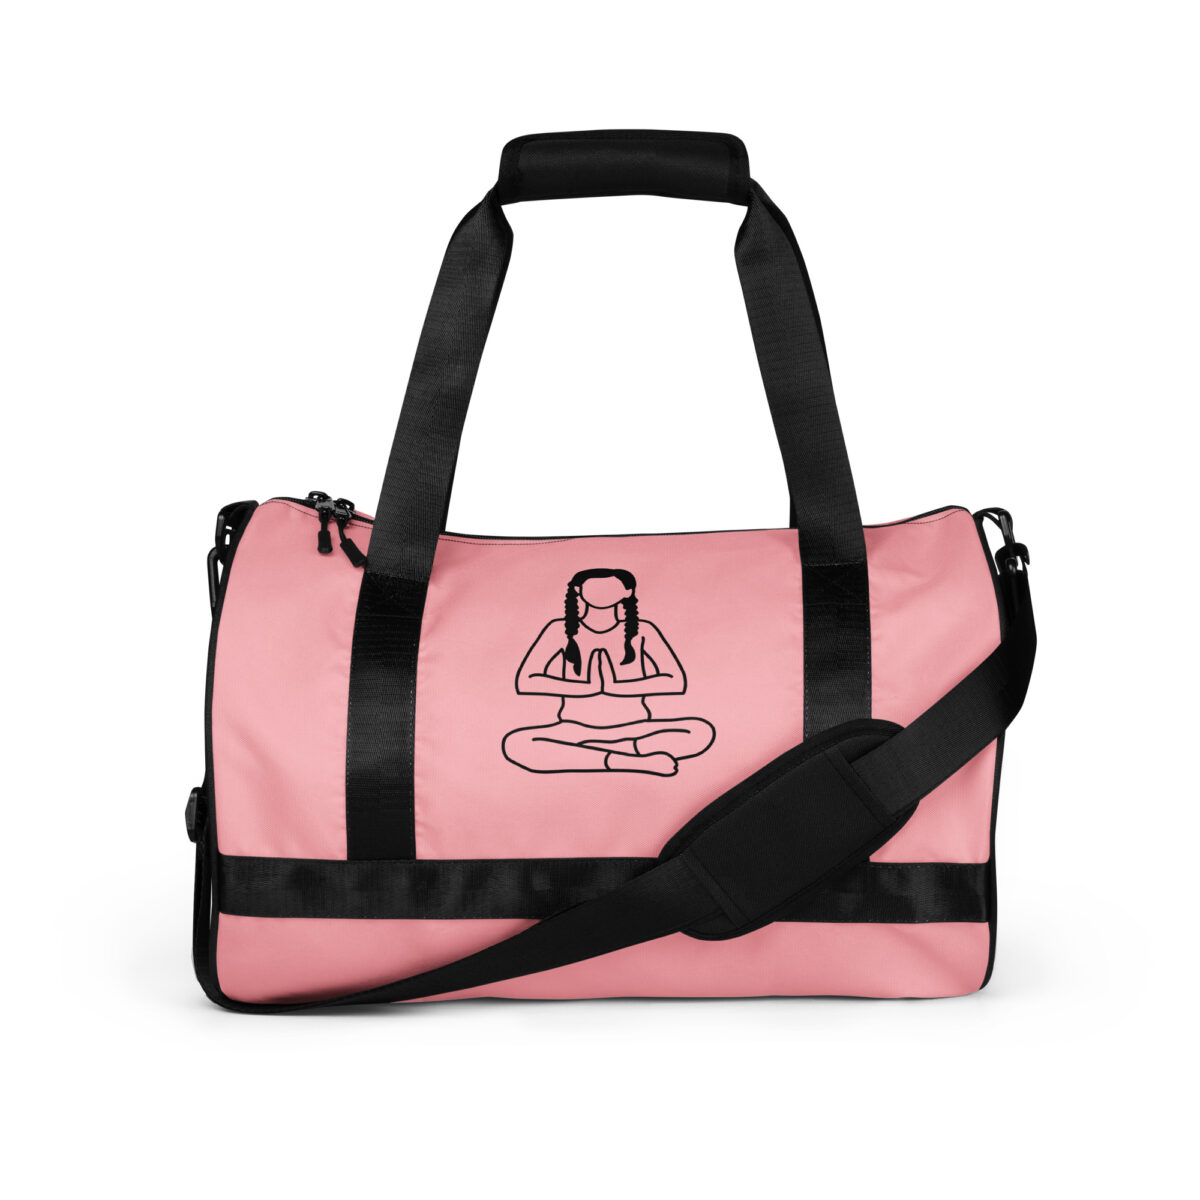 Pink Yoga Bag With Inside Pockets